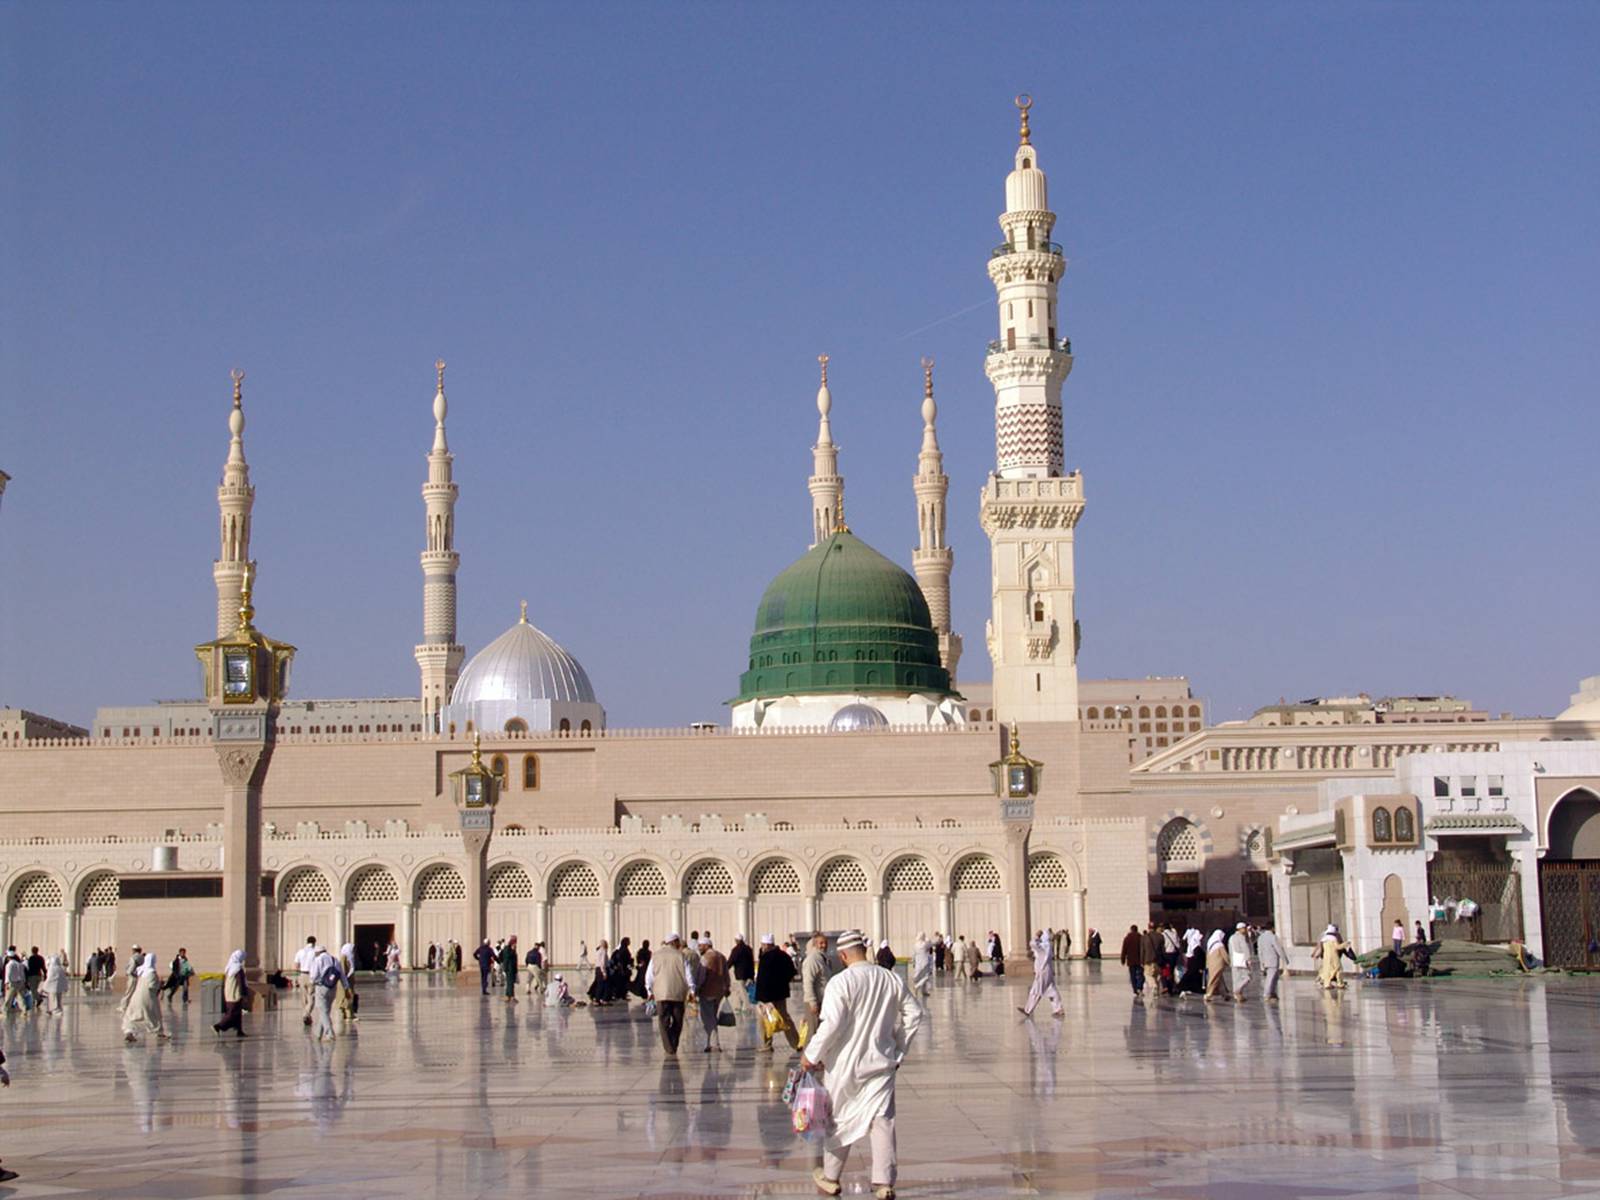 Медина что это. Мечеть пророка (Масджид АН-Набави). Медина мечеть пророка Мухаммеда. Мечеть АН-Набави, Медина (Саудовская Аравия). Мечеть пророка Мухаммеда в Медине.